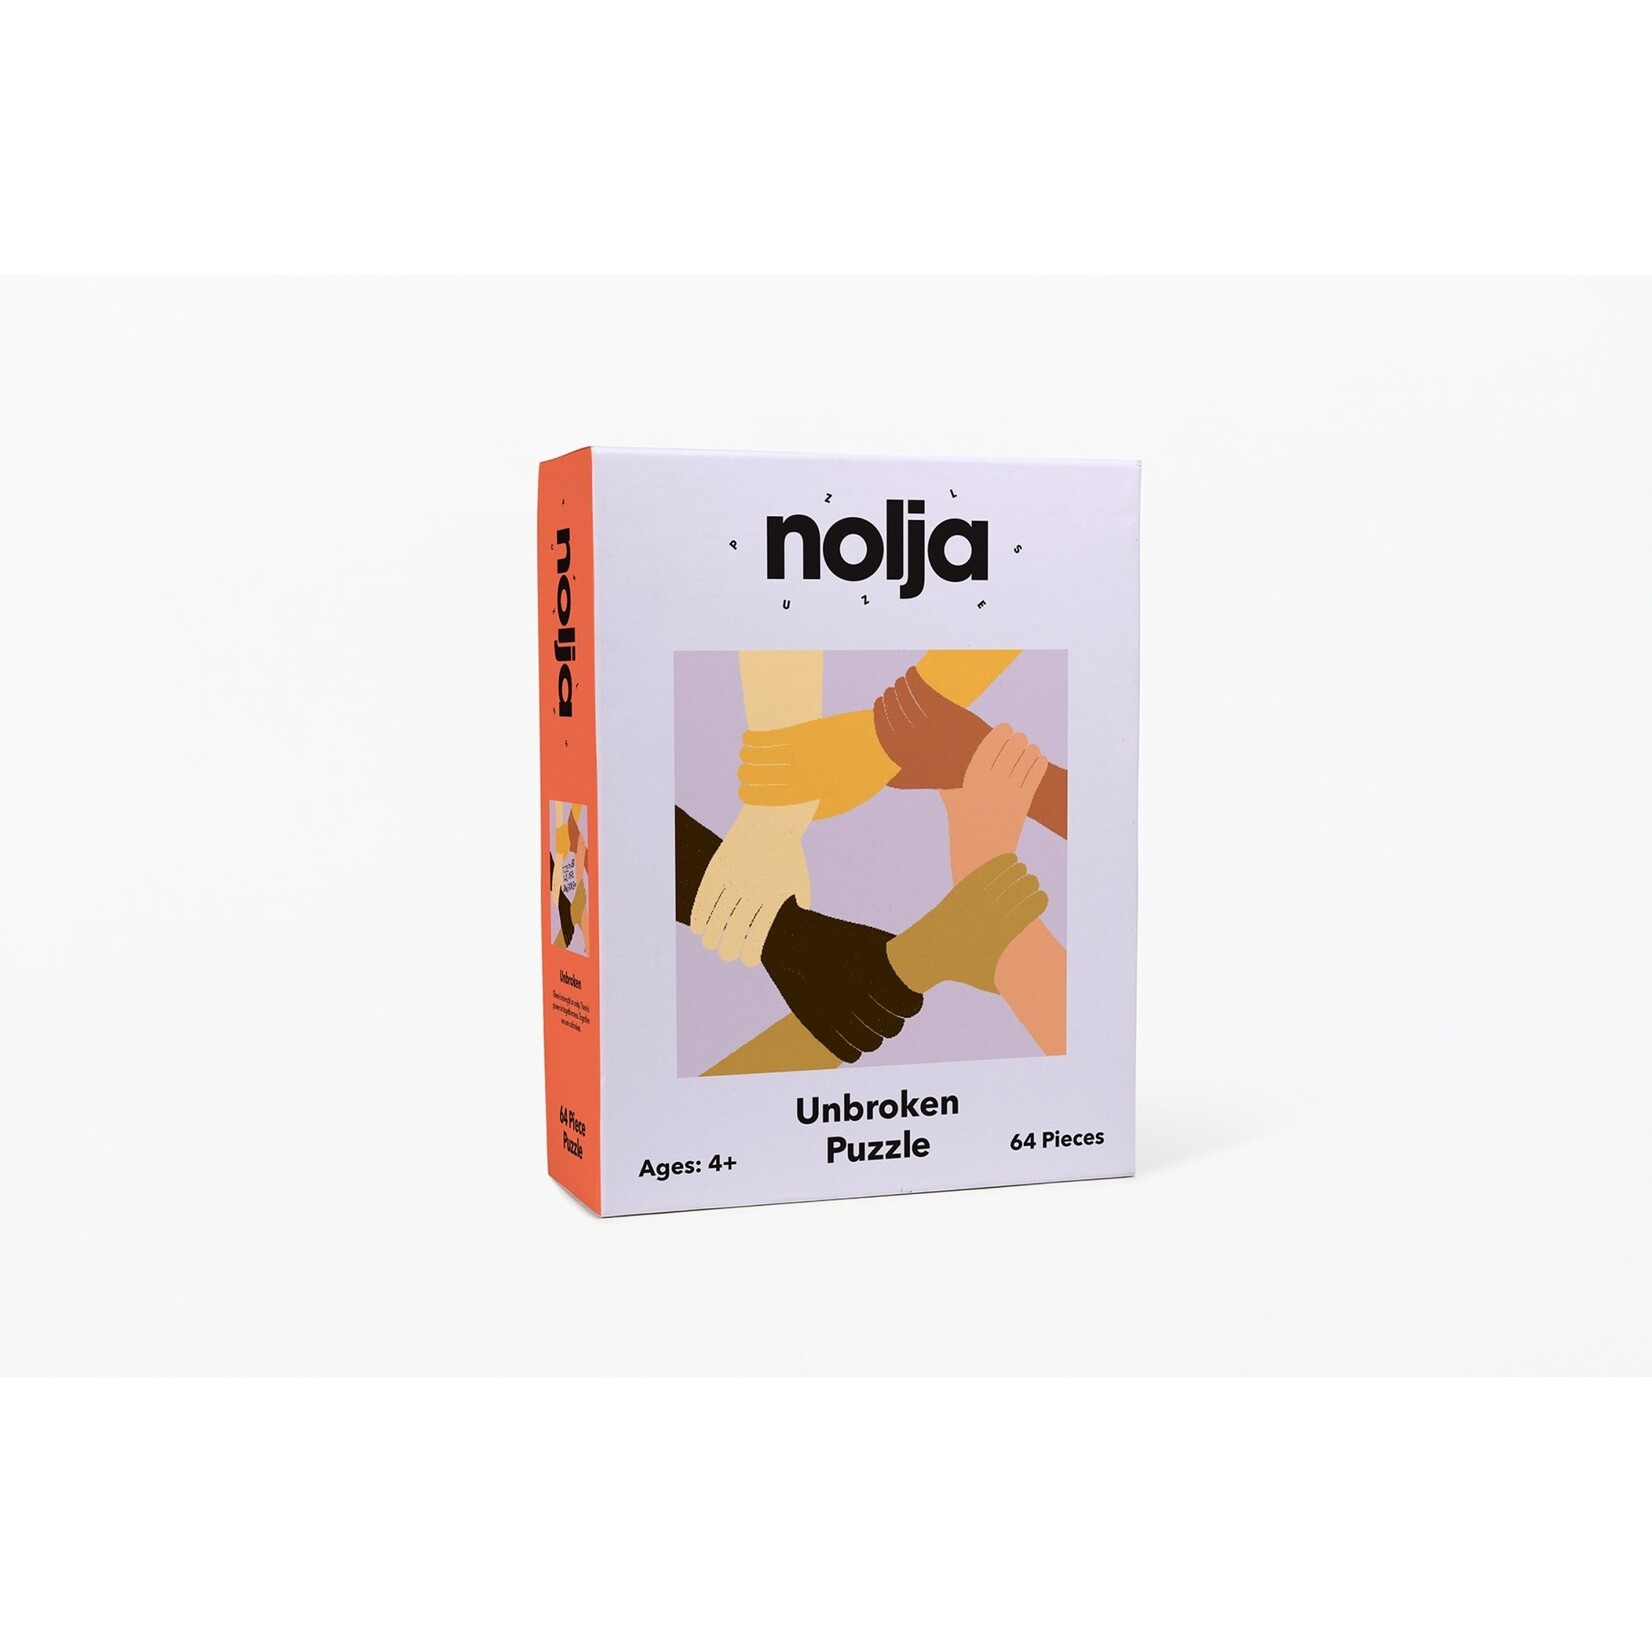 Nolja Play Unbroken Puzzle - 64 Pieces